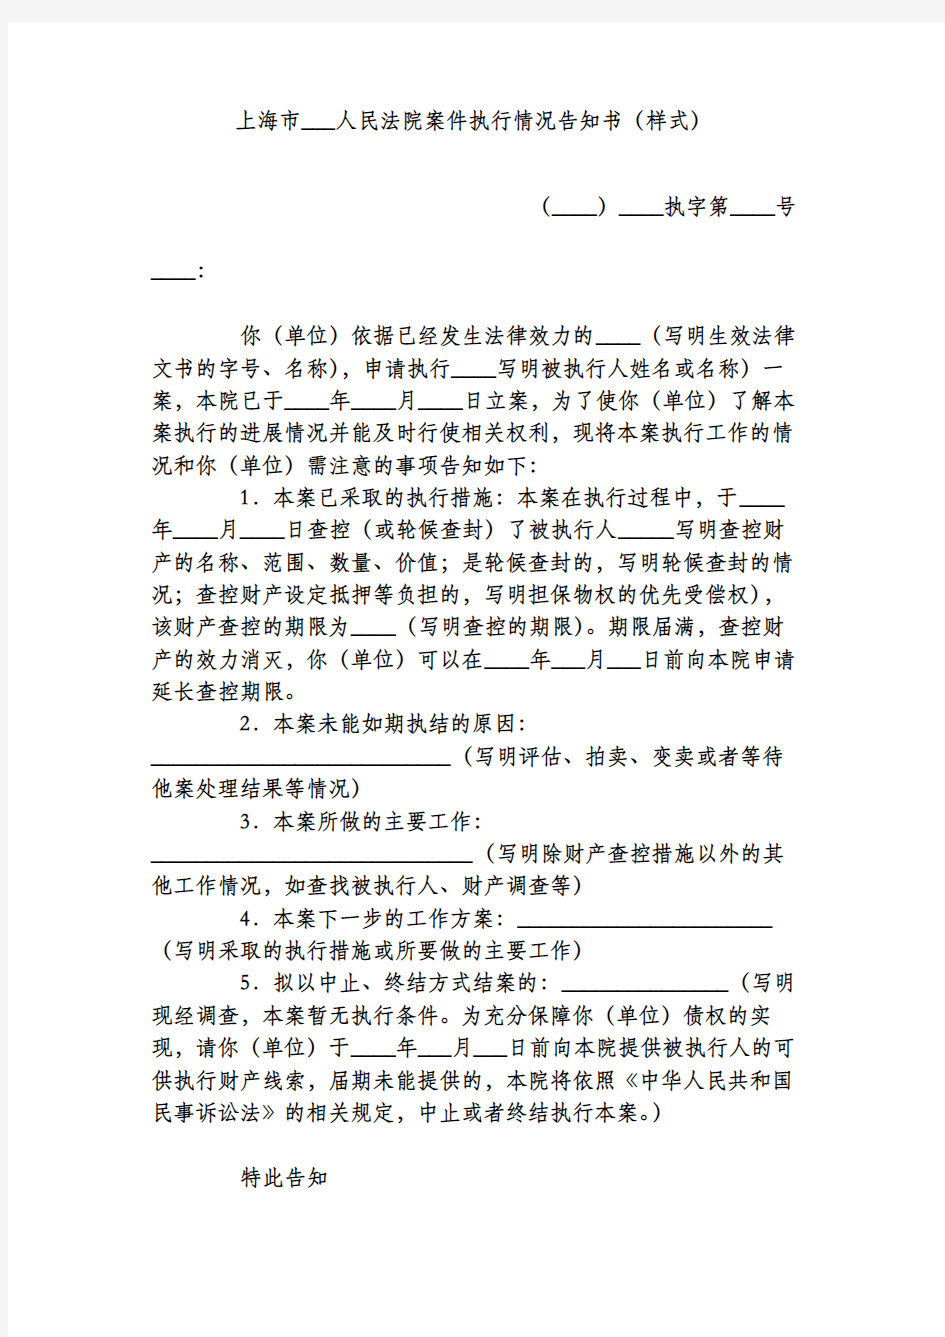 上海市人民法院案件执行情况告知书(样式)